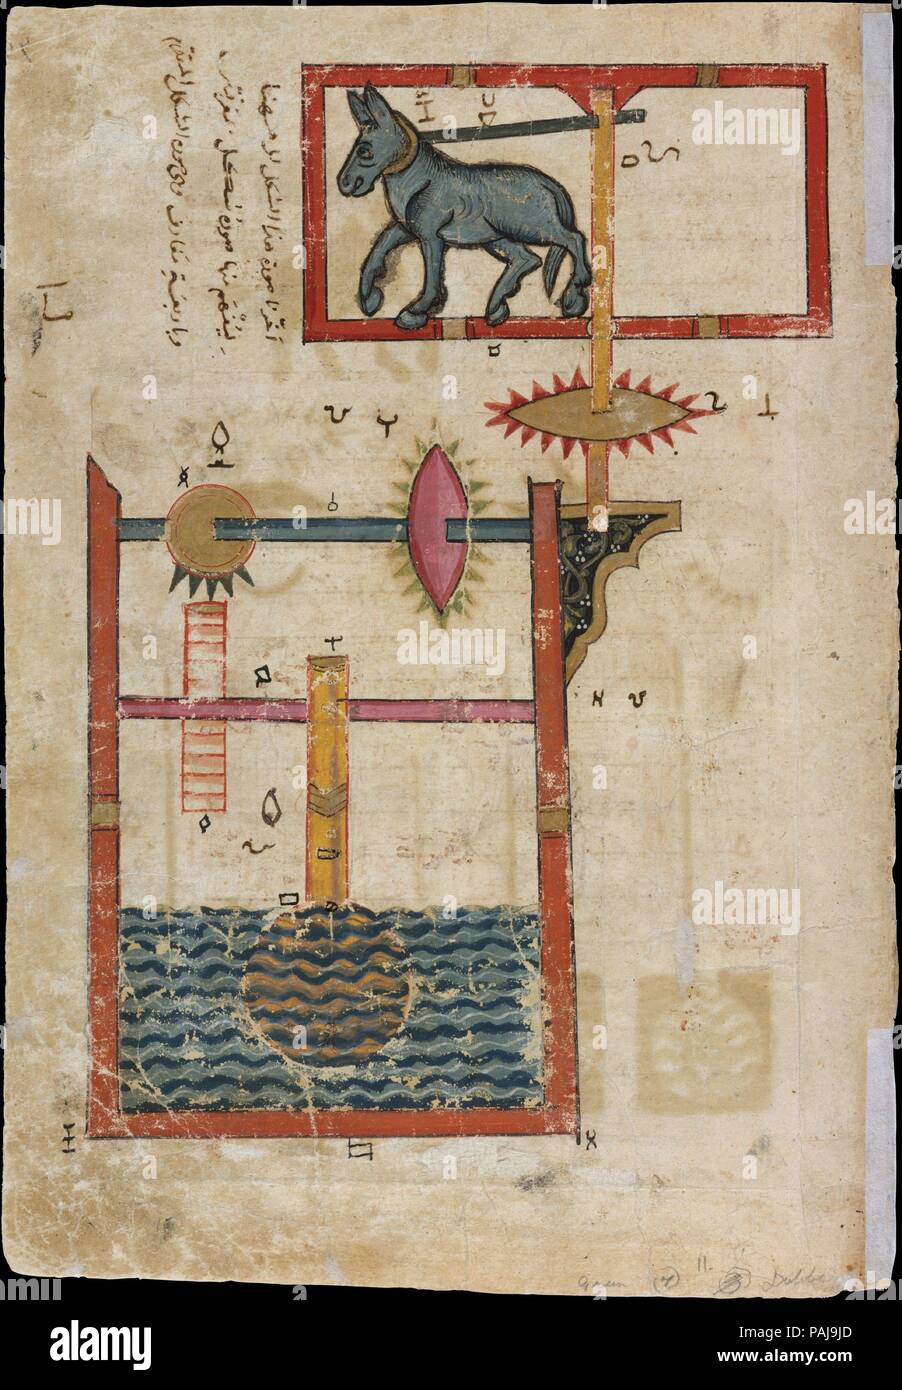 'Design auf jeder Seite für Waterwheel von Donkey Power', Folio aus einem Buch der Erkenntnis des genialen mechanischen Geräten gearbeitet, die von al-Jazari. Artist: Kopieren von Farrukh ibn 'Abd al-Latif. Autor: Badi' al-Zaman Ibn Al Razzaz al-Jazari (1136-1206). Abmessungen: H. 11 5/8 in. (29. 5 cm) W. 8 3/8 in. (21,3 cm) Mat Größe: H 19. (48,3 cm) W. 14 1/4 in. (36,2 cm) Rahmen: H.21 cm. (54,9 cm) W. 16 3/4 in. (42,5 cm). Datum: vom A.H. 715/A.D. 1315. Museum: Metropolitan Museum of Art, New York, USA. Stockfoto